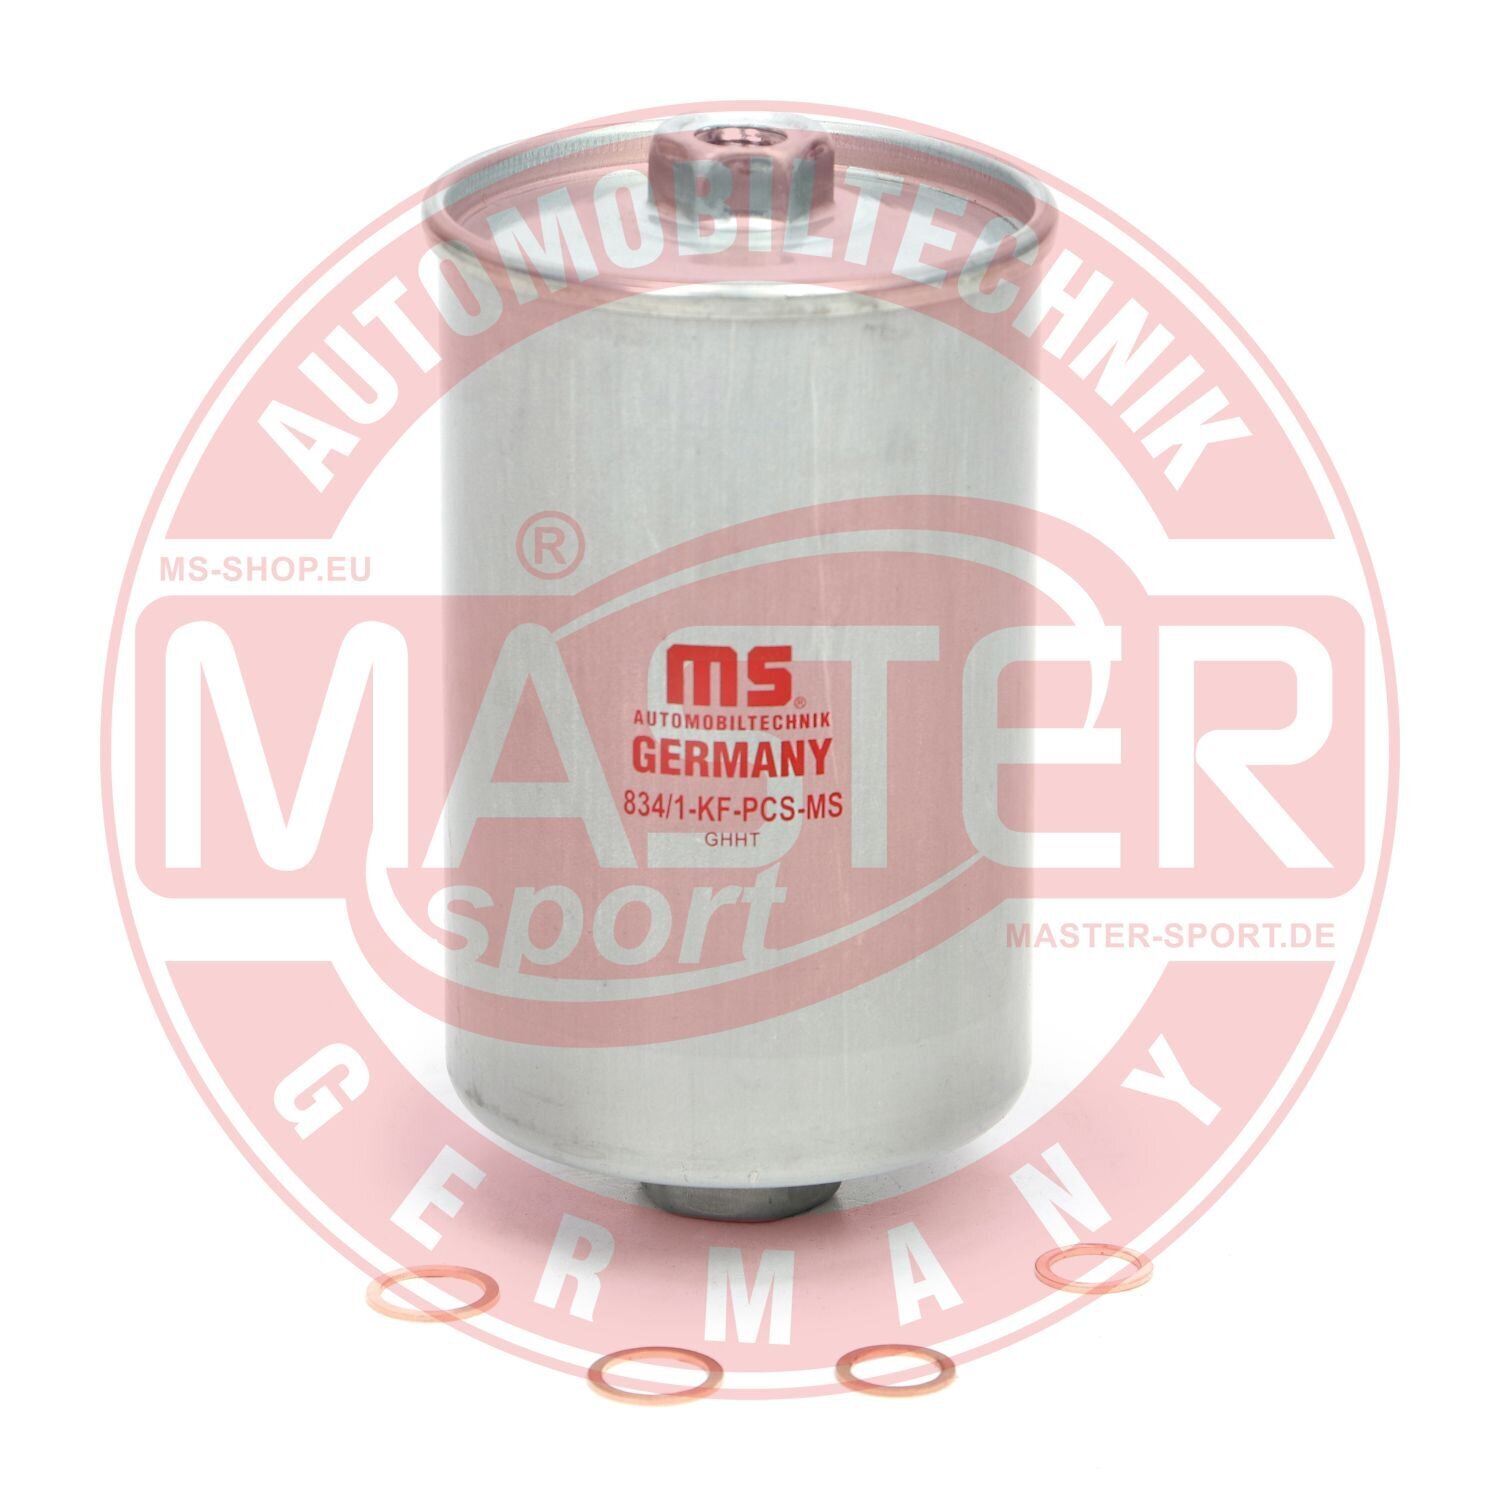 Kraftstofffilter MASTER-SPORT GERMANY 834/1-KF-PCS-MS